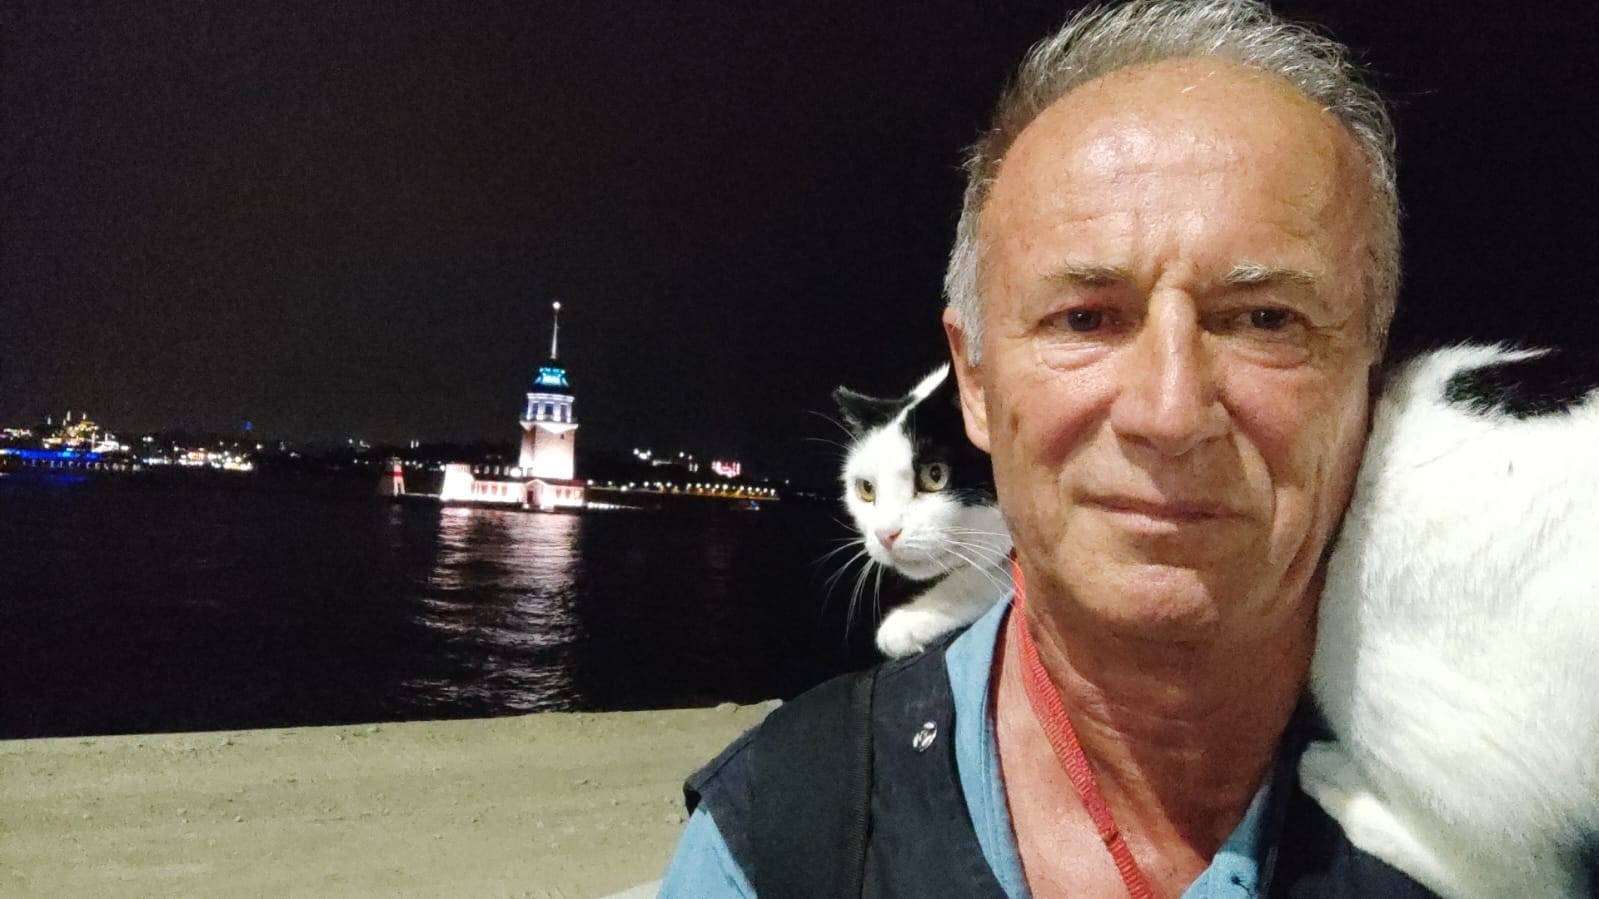 Omzundaki kedisi ile İstanbul’u karış karış gezdi